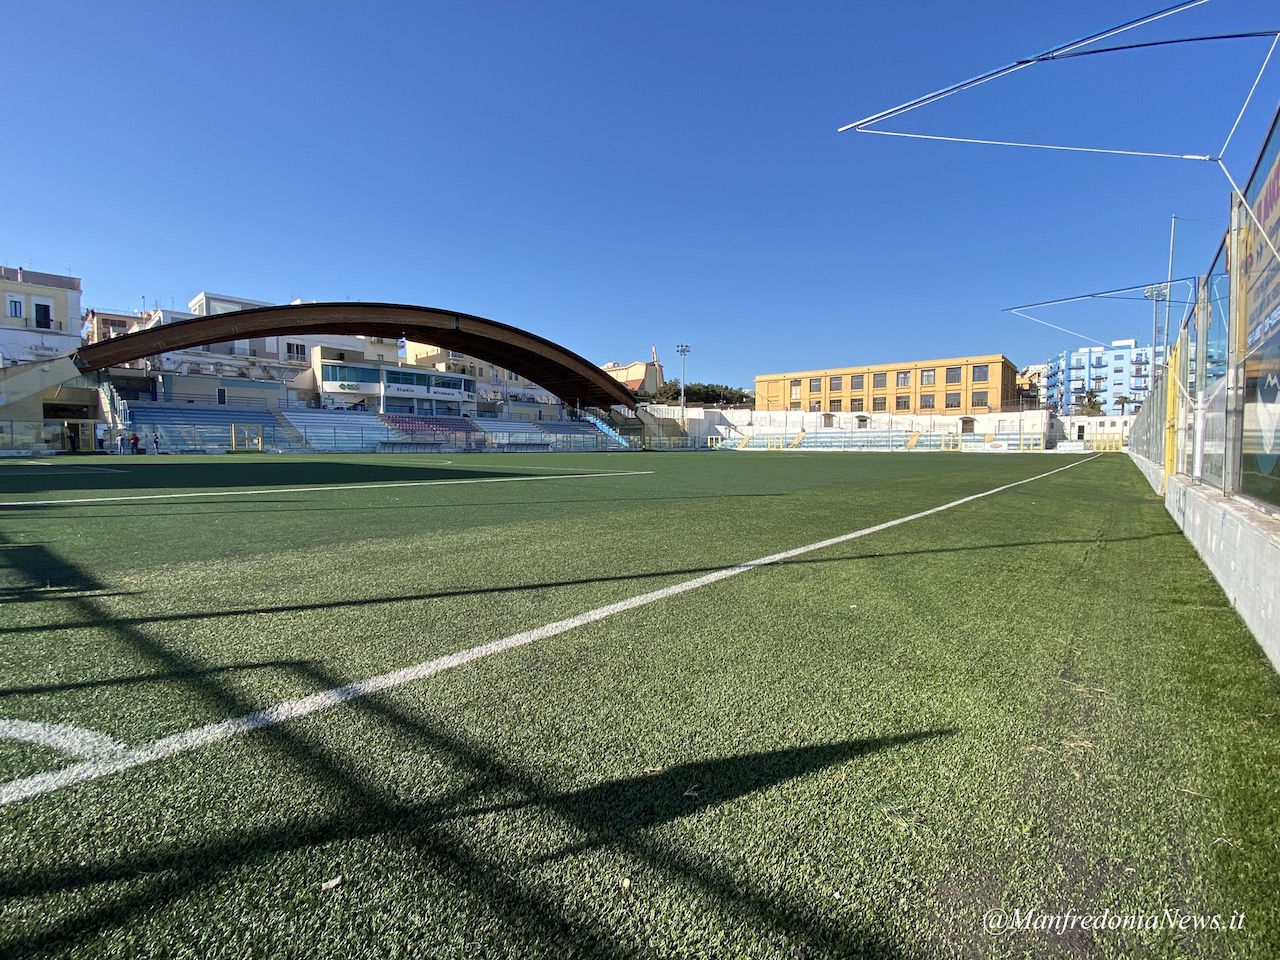 Lo stadio Miramare di Manfredonia affidato in concessione per 15 anni